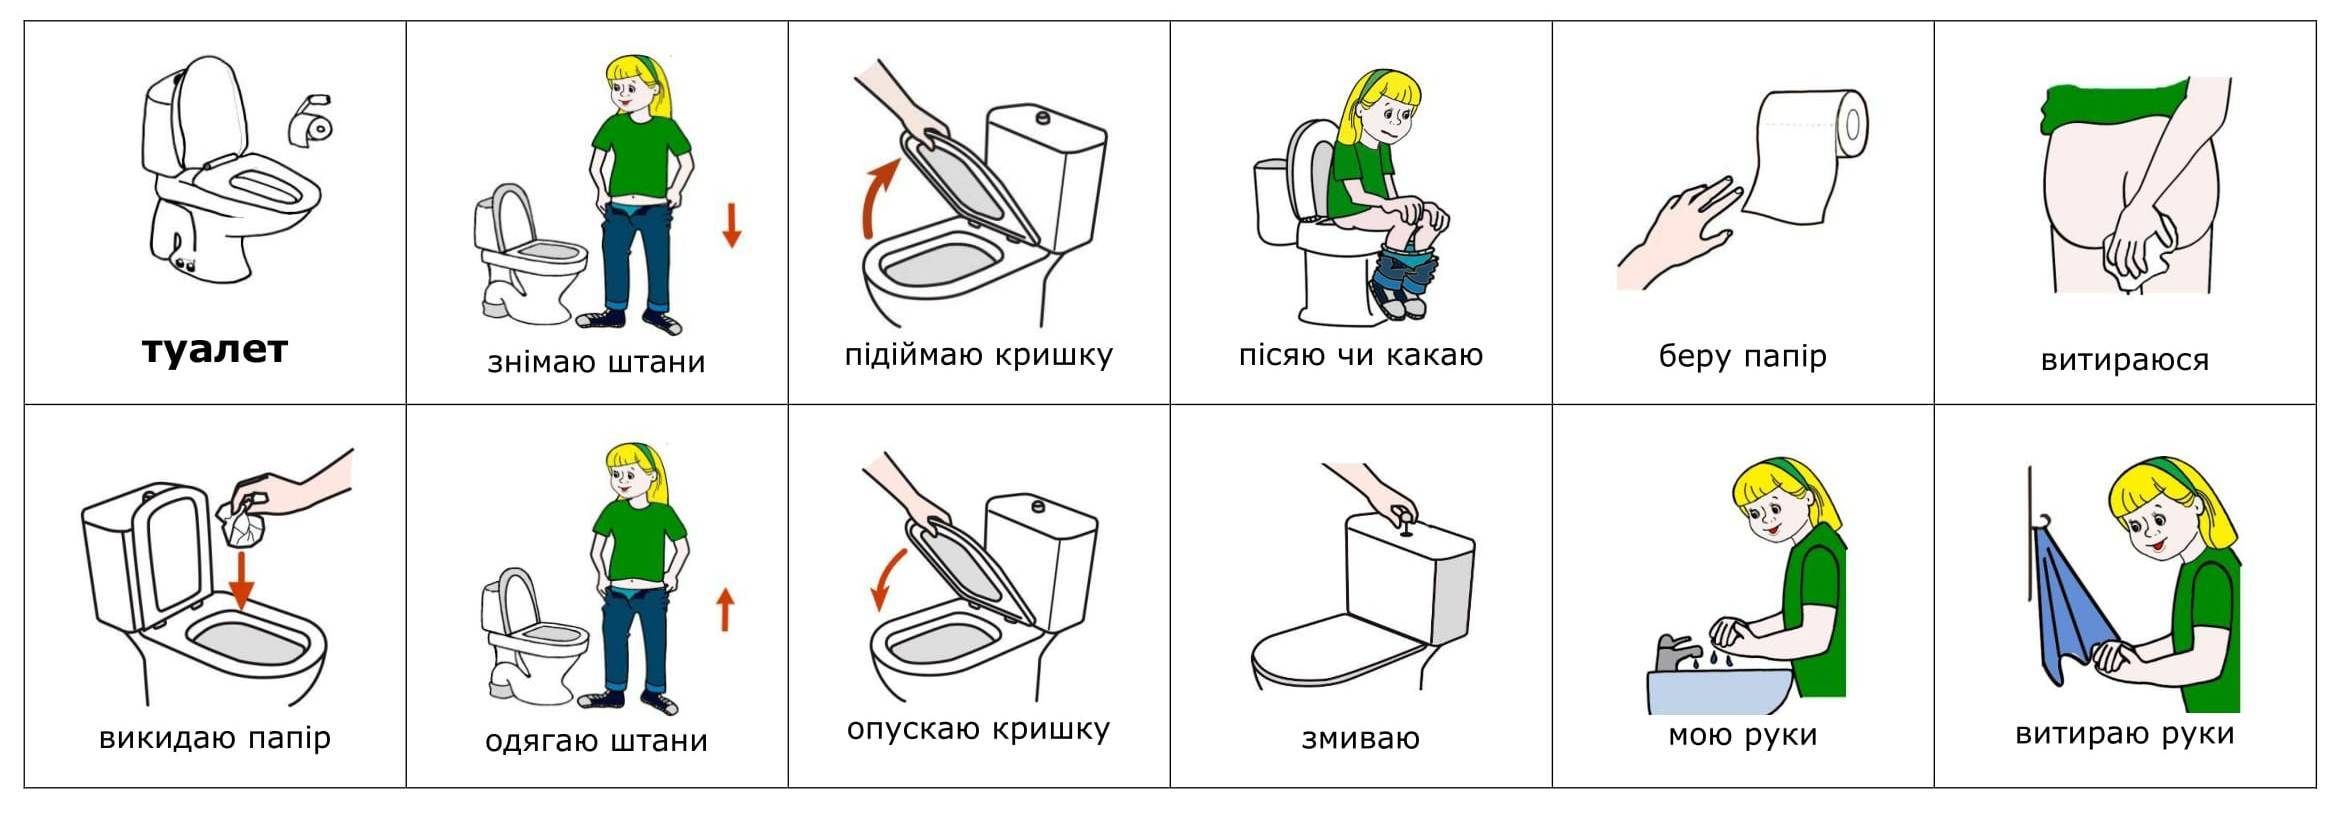 Инструкция как пользоваться туалетом для детей